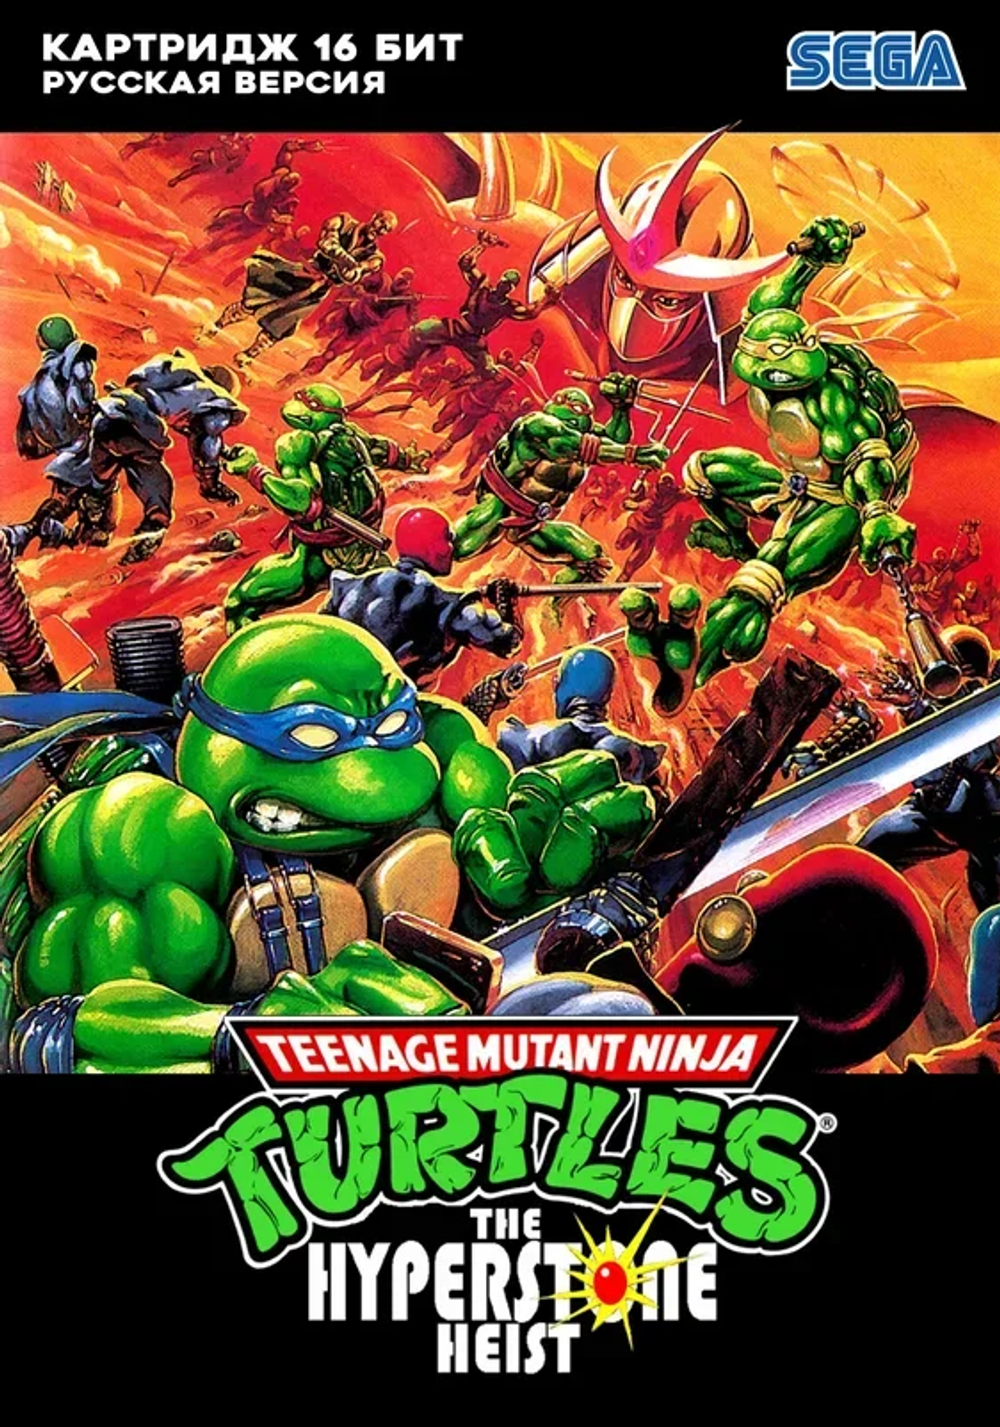 TMNT Hyperstone Heist Sega. Teenage Mutant Ninja Turtles the Hyperstone Heist. TMNT Hyperstone Heist Sega Dreamcast. Teenage Mutant Ninja Turtles the Hyperstone Heist Sega. Tmnt sega